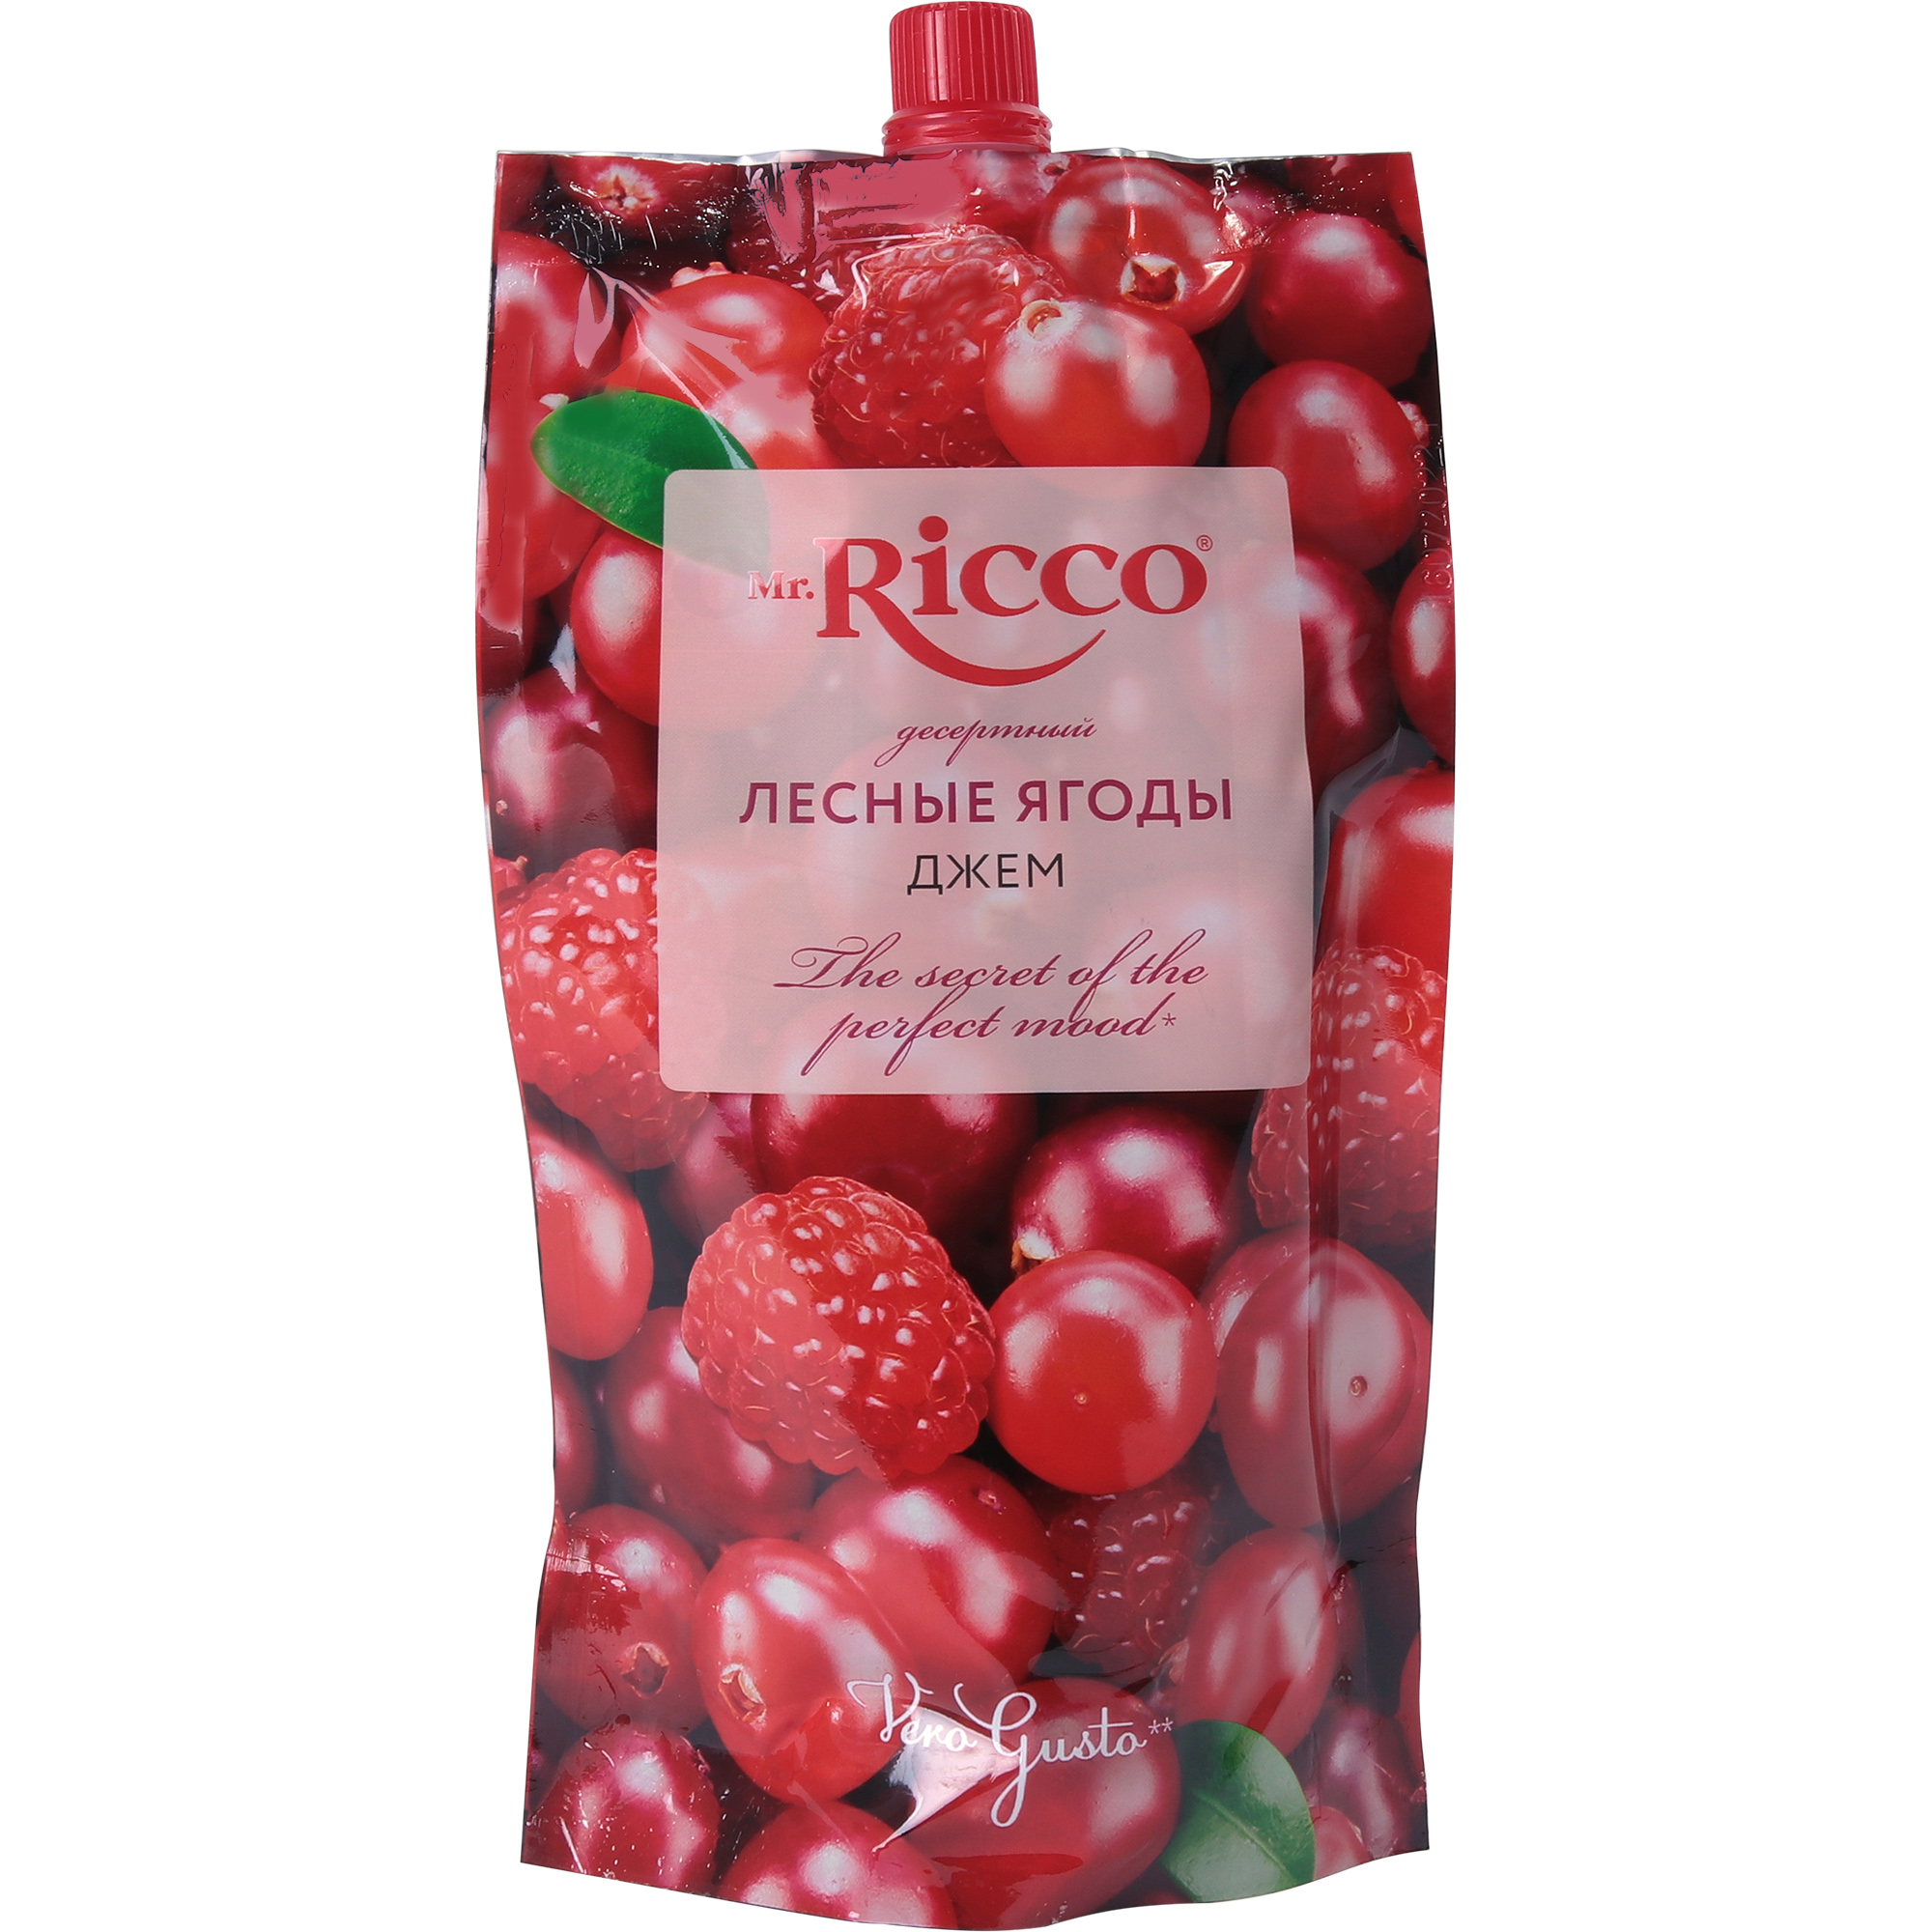 Джем Mr.Ricco лесные ягоды, 300 г напиток чайный флорис 300 г лесные ягоды банка